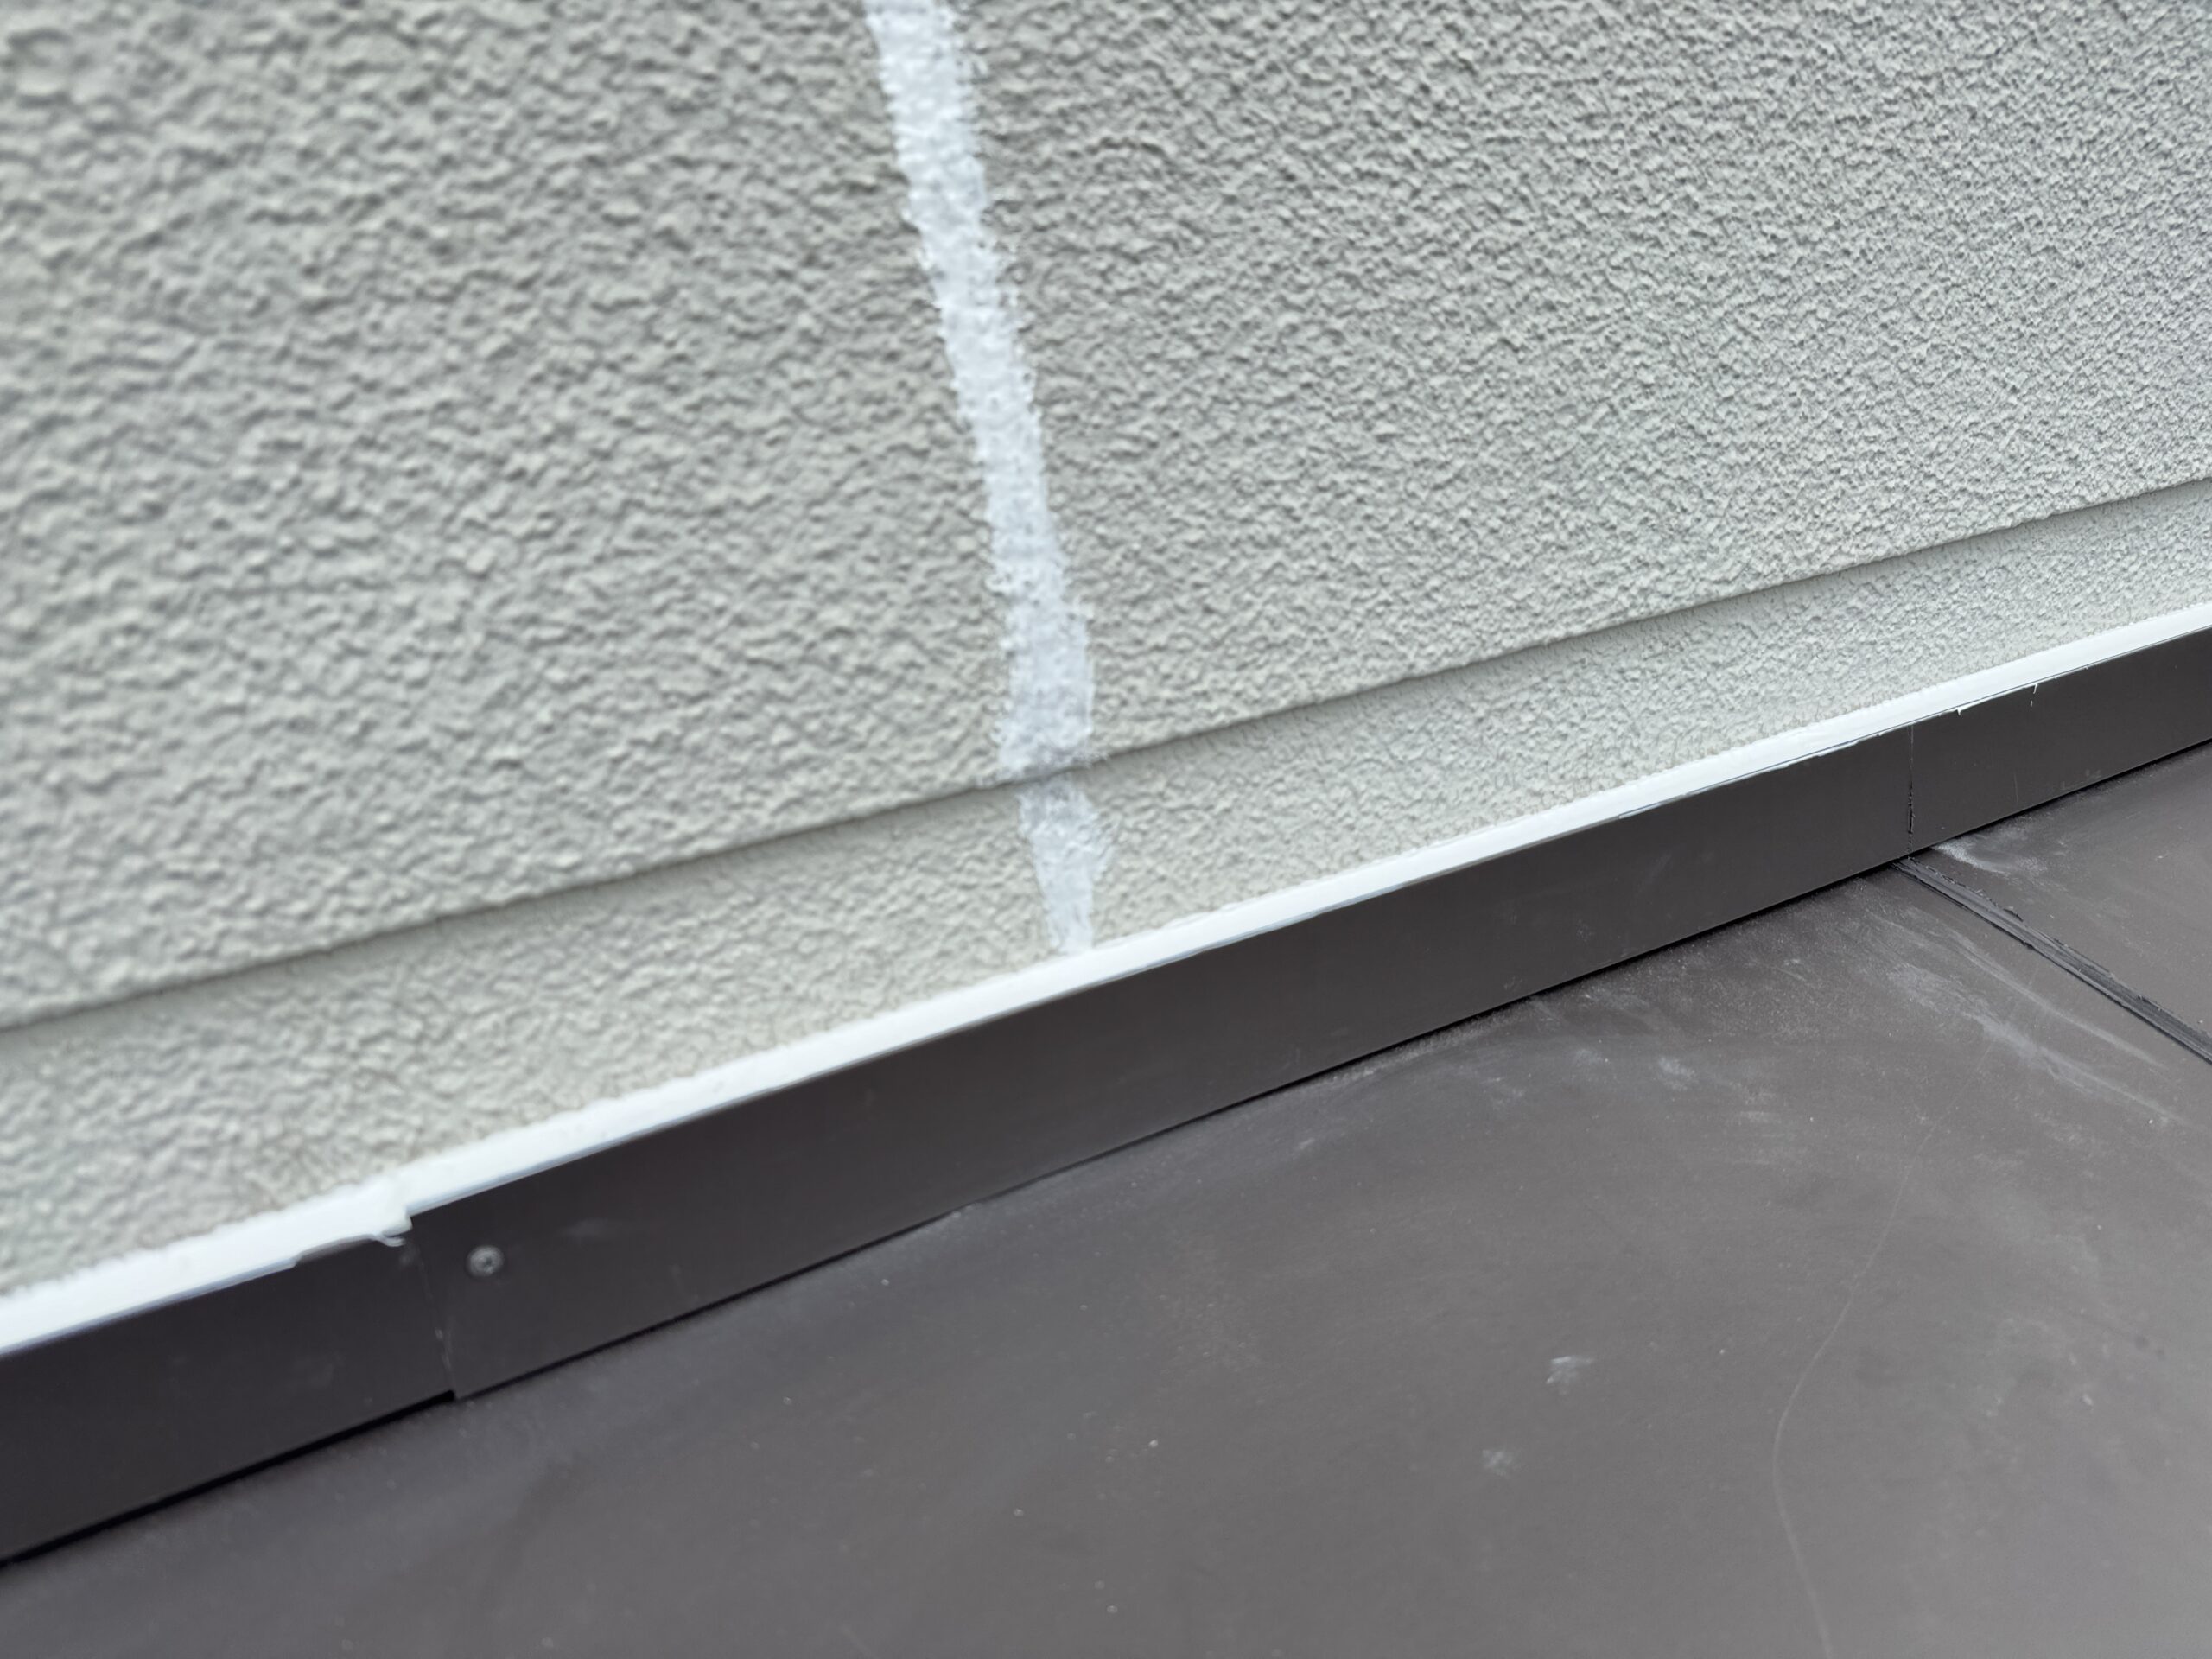 壁際の防水処理を二重で行うことで確実に雨漏りを防ぎます。